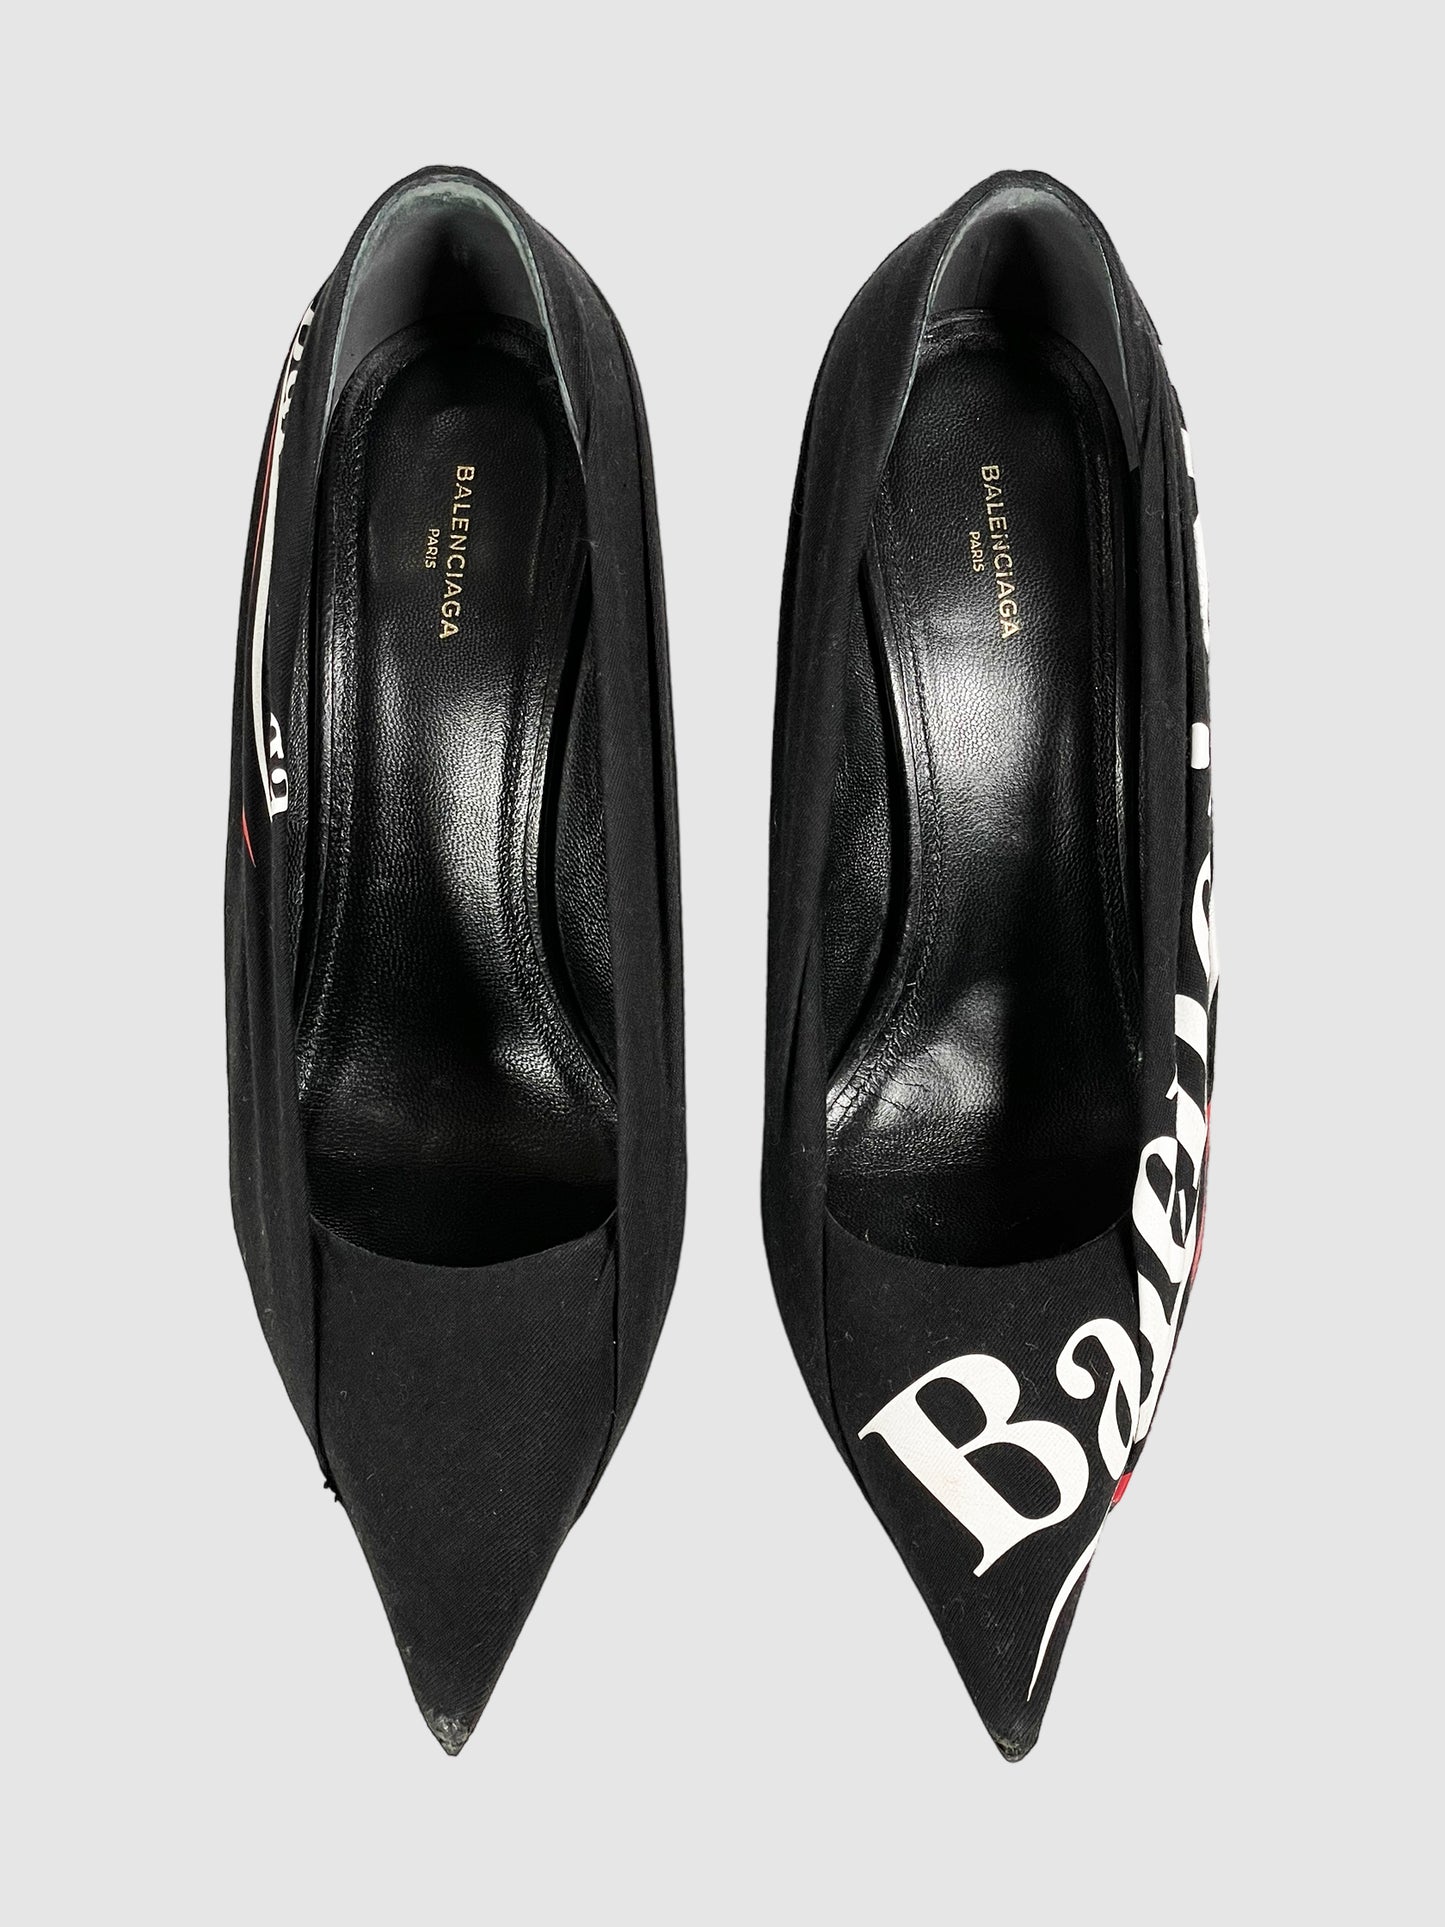 Balenciaga Printed Pointed Toe Pumps - Size 38